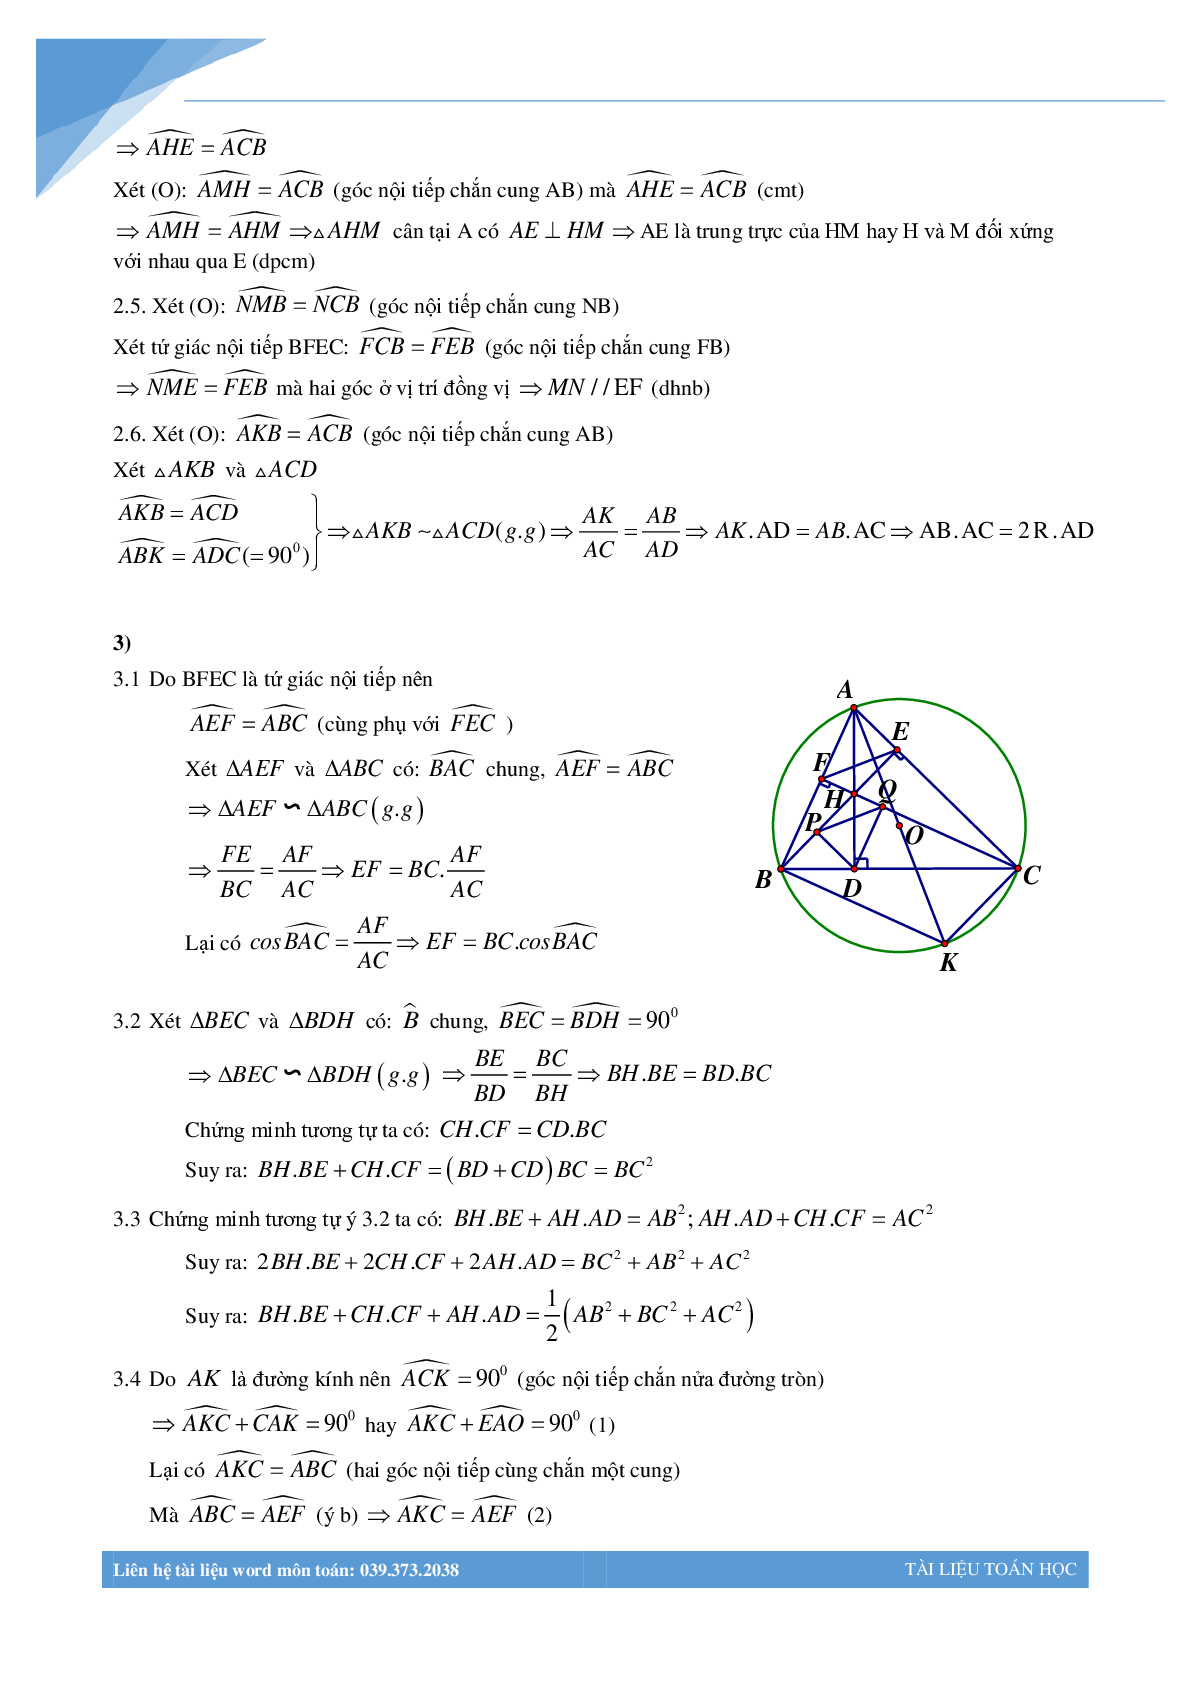 Chùm bài toán hình học luyện thi vào lớp 10 (trang 3)